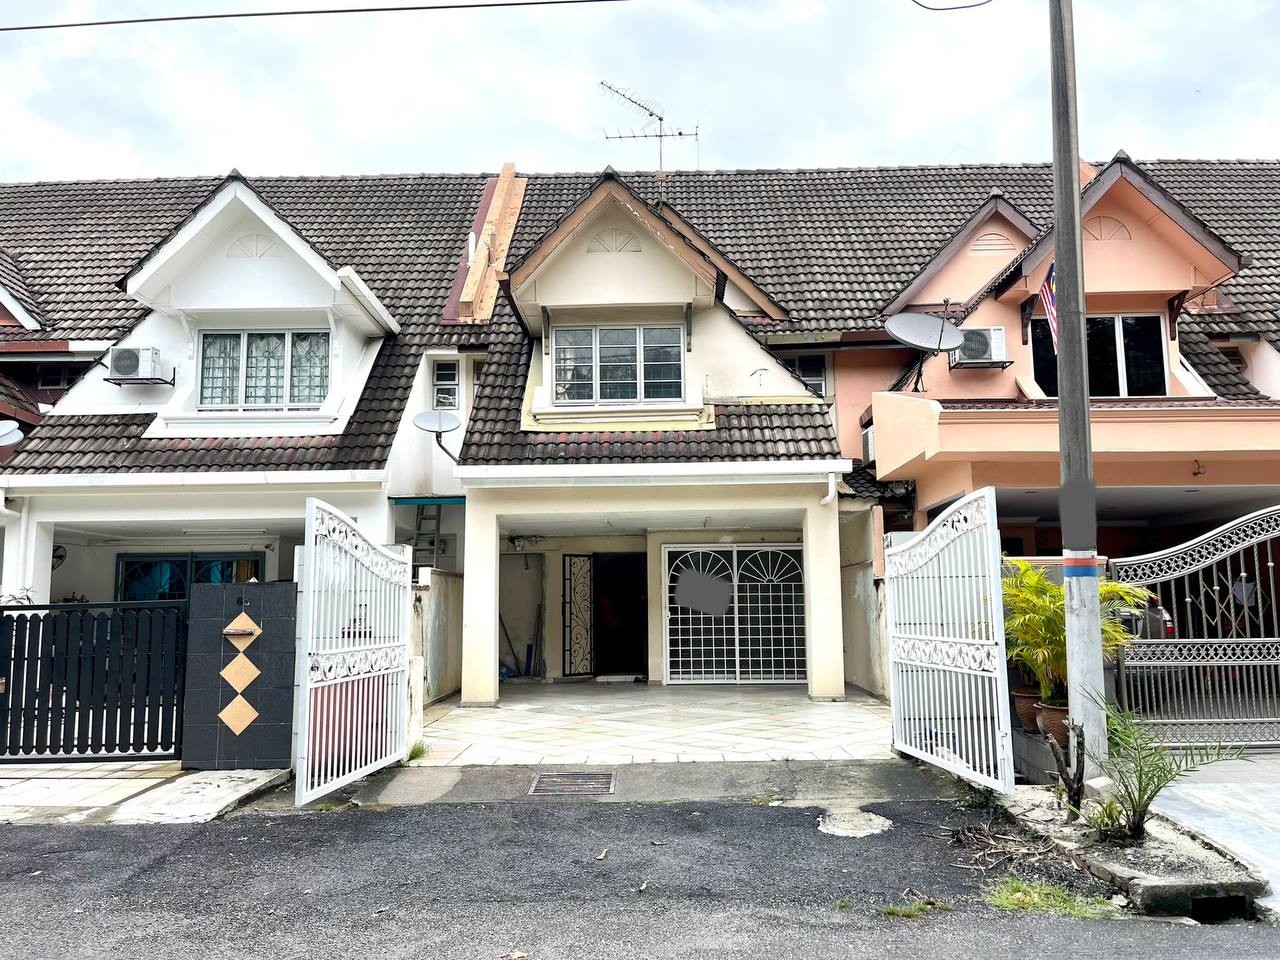 EXTENDED KITCHEN Double Storey Terrace House USJ 1 Subang Jaya Selangor